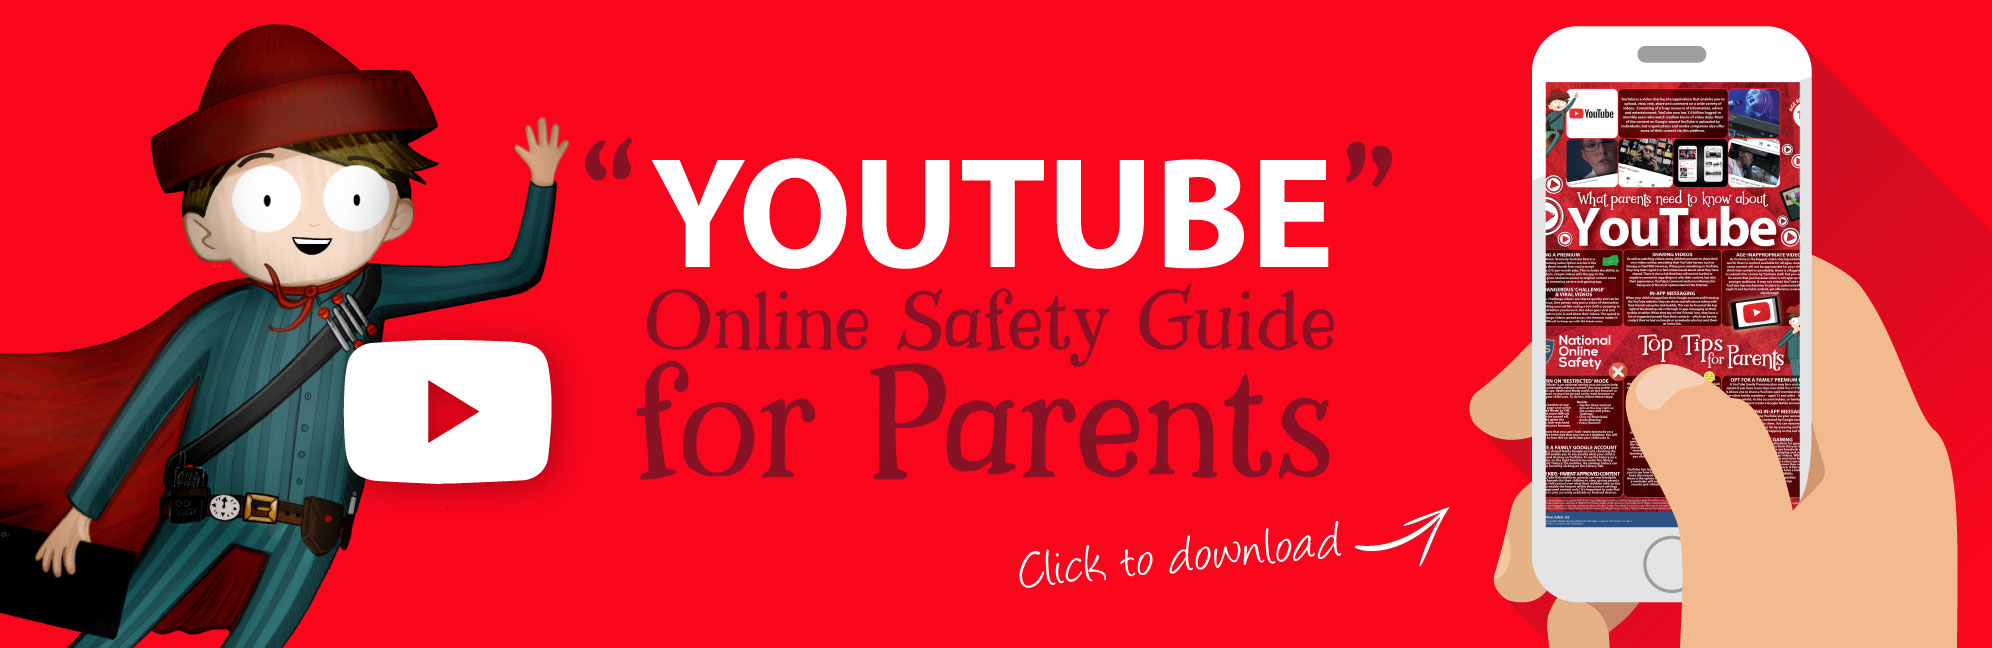 Youtube-Online-Safety-Parents-Guide-Web-Image-121118-V1